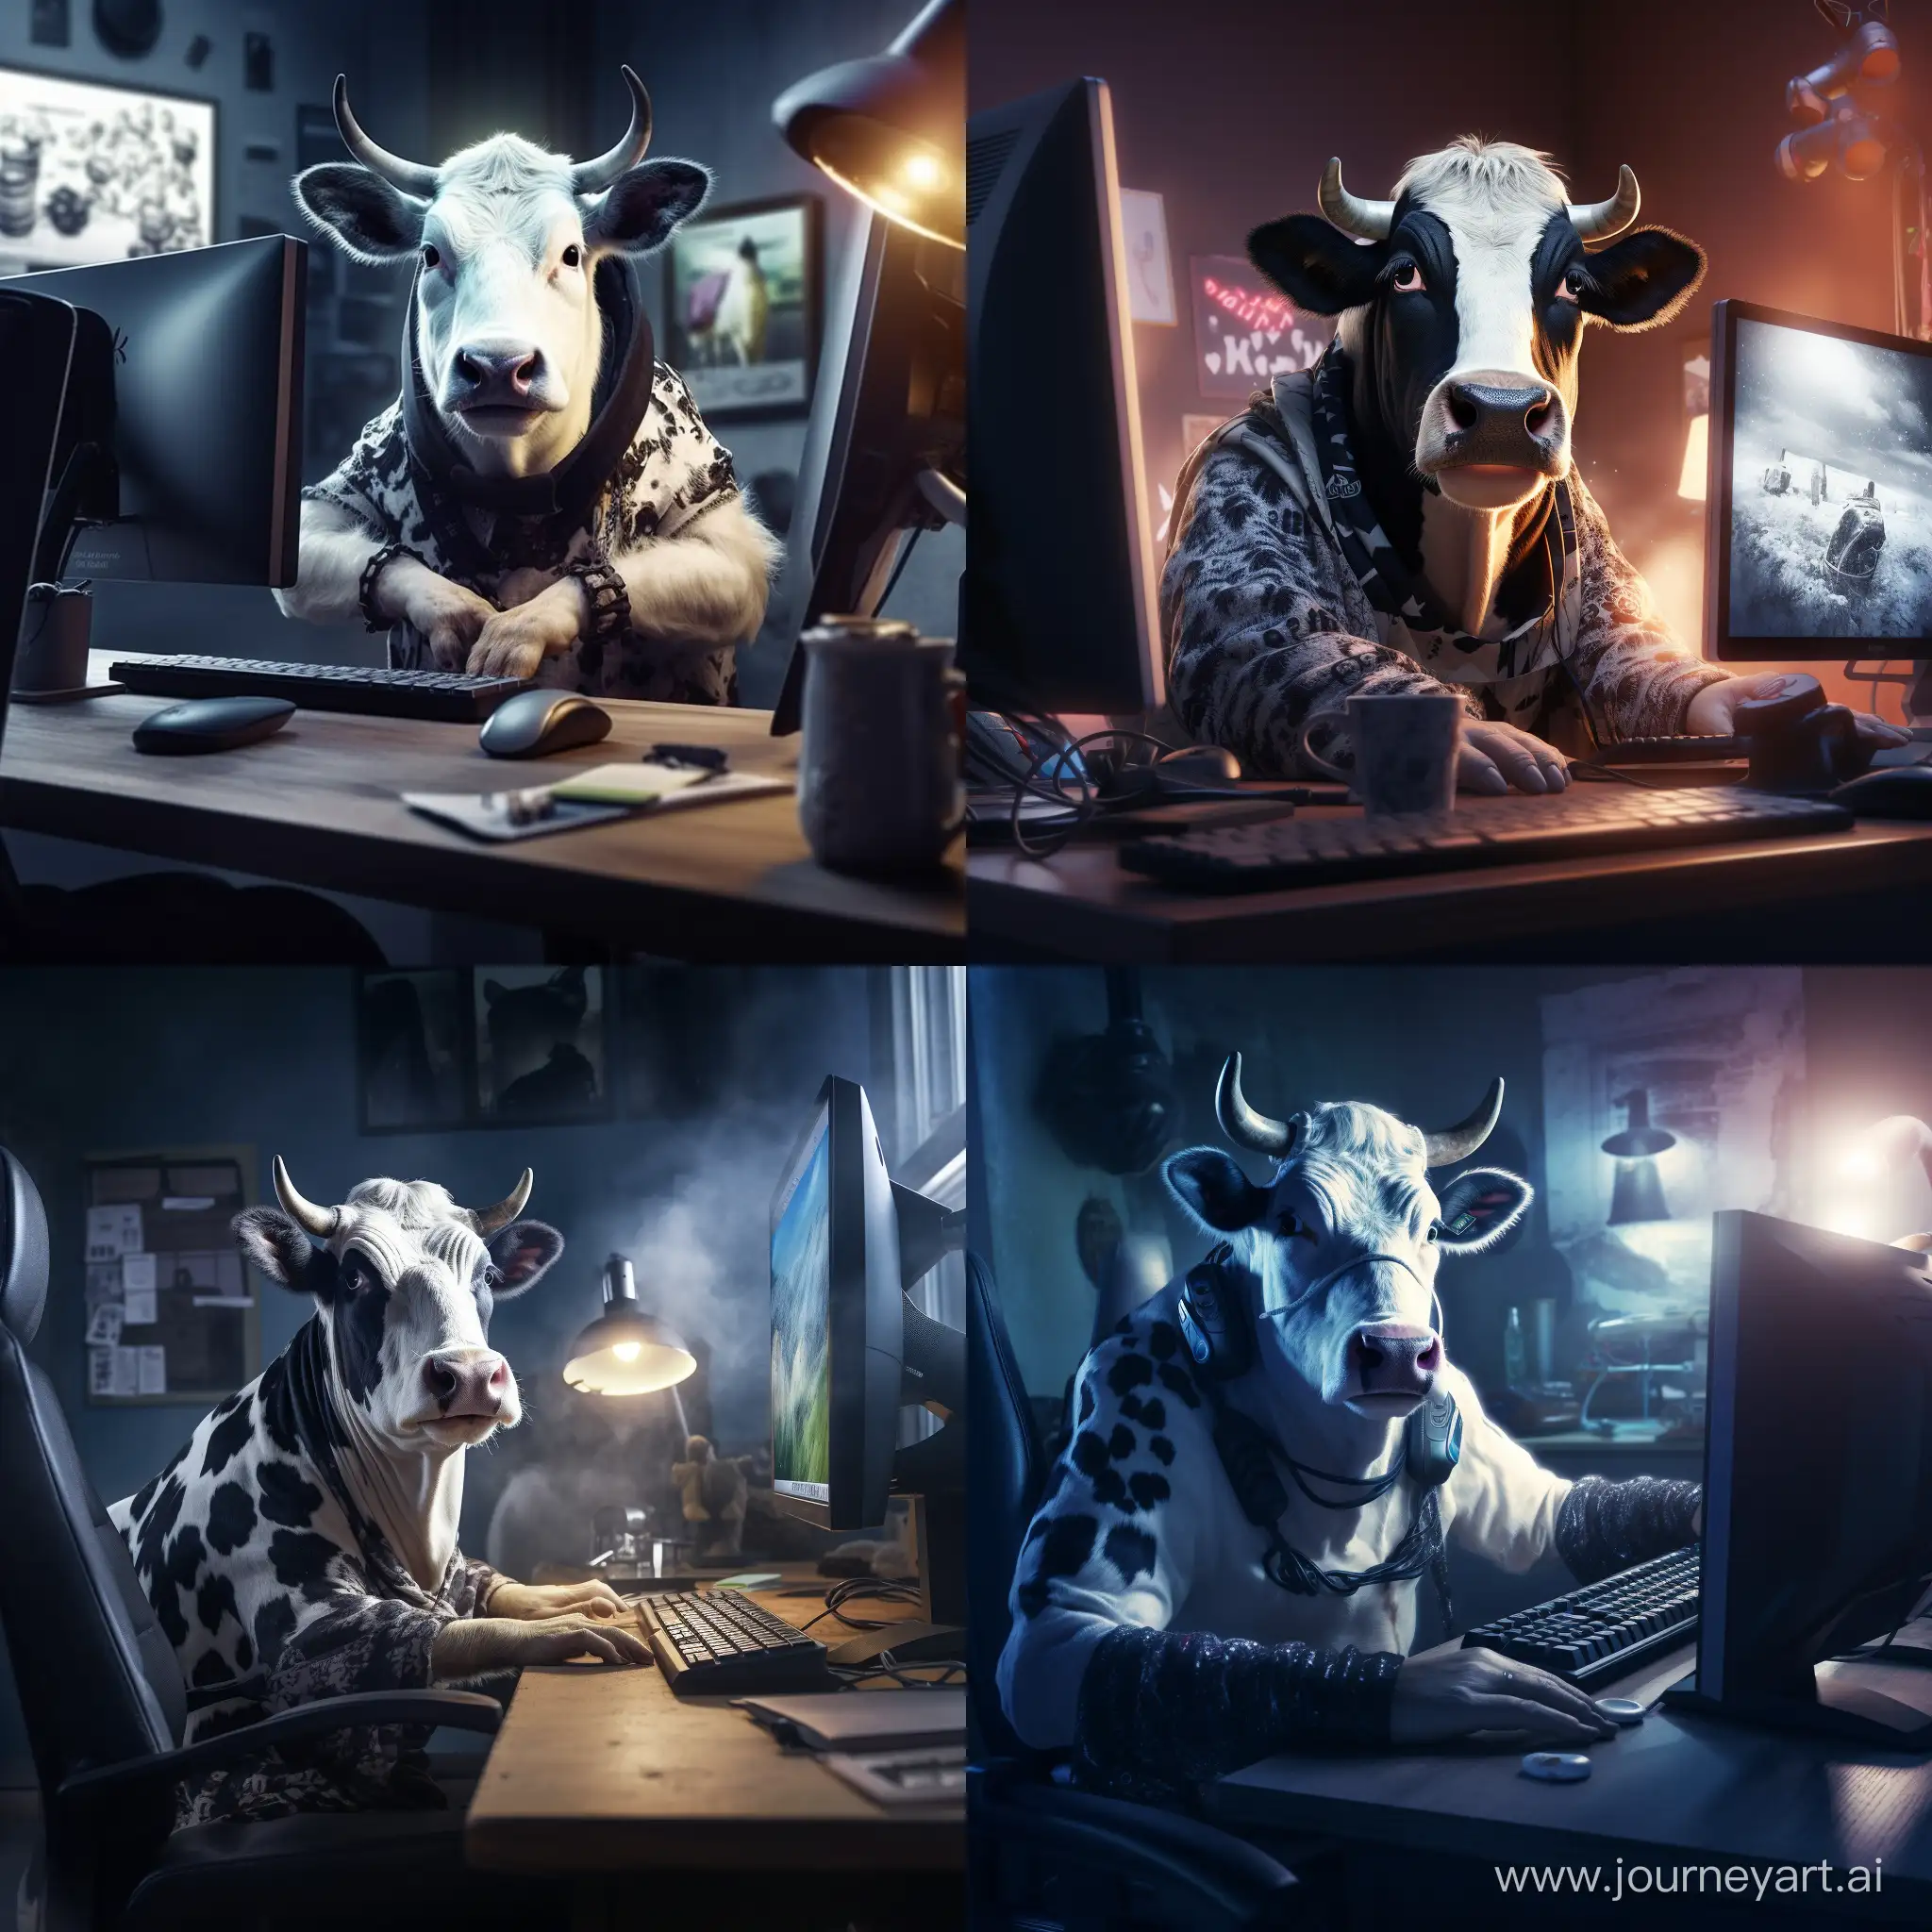 Savvy-CowPatterned-Feline-at-Computer-Desk